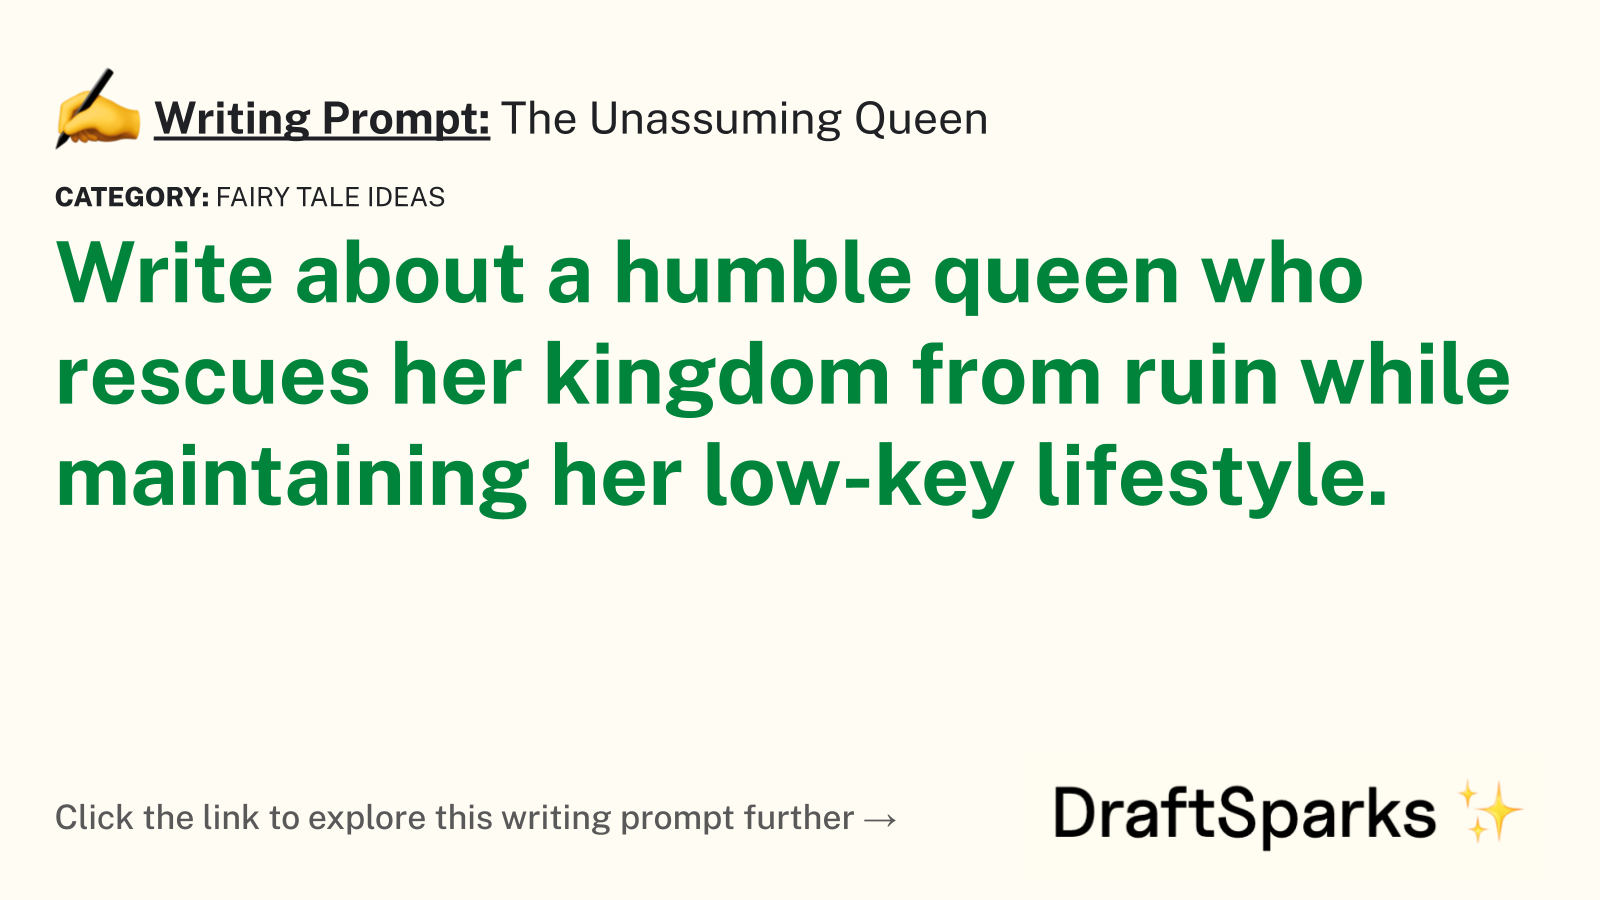 The Unassuming Queen